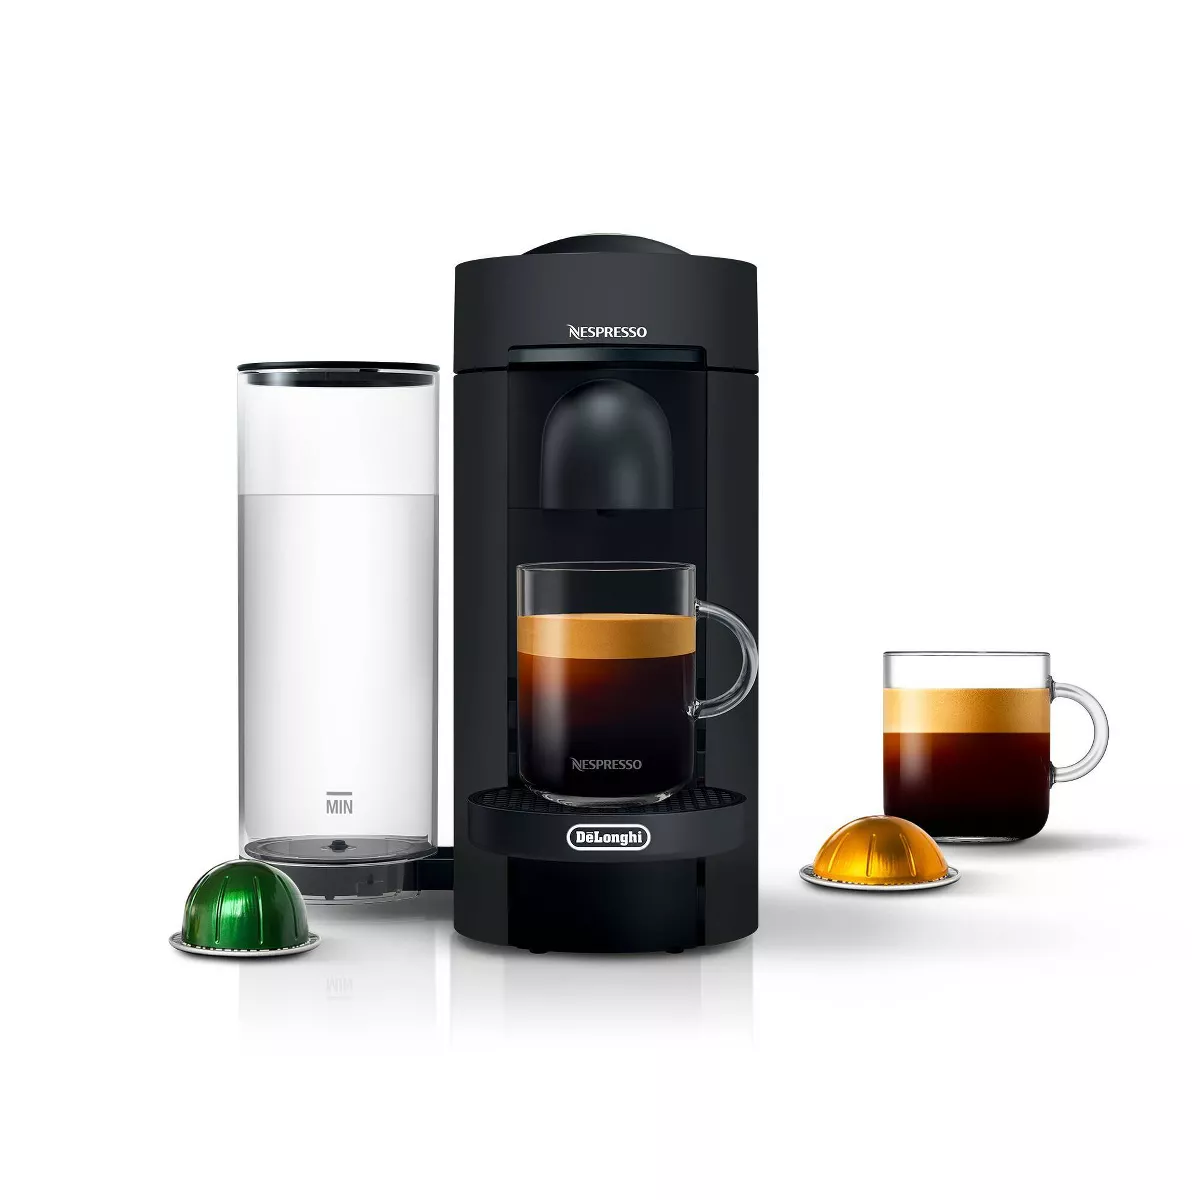 Nespresso VertuoPlus Coffee Maker and Espresso Machine by DeLonghi Black Matte